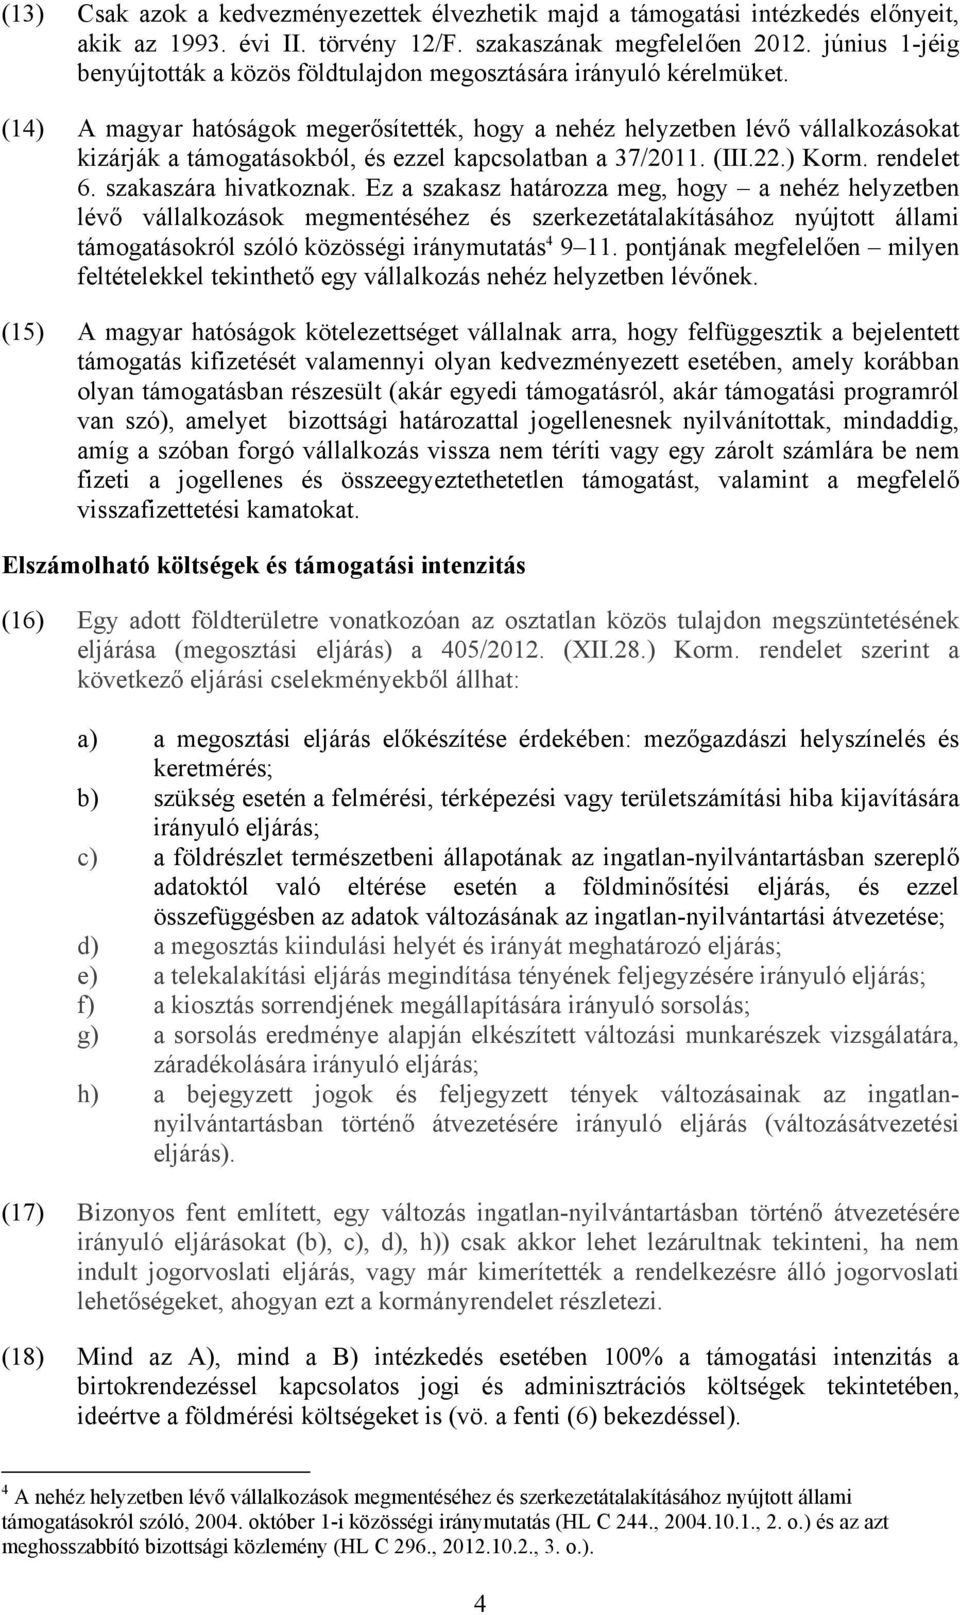 (14) A magyar hatóságok megerősítették, hogy a nehéz helyzetben lévő vállalkozásokat kizárják a támogatásokból, és ezzel kapcsolatban a 37/2011. (III.22.) Korm. rendelet 6. szakaszára hivatkoznak.